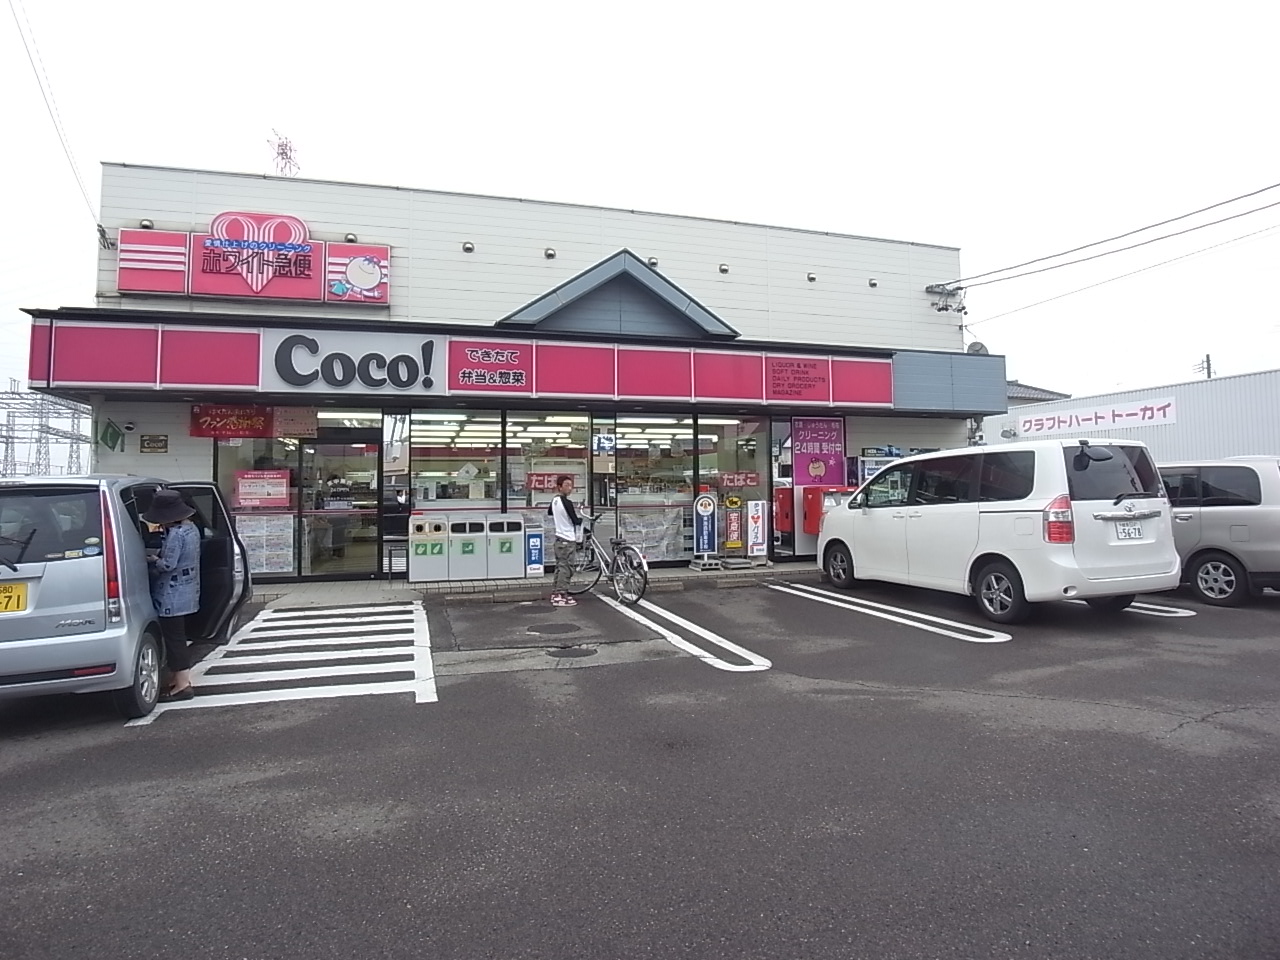 Convenience store. 567m to the Coco store Fukuda store (convenience store)